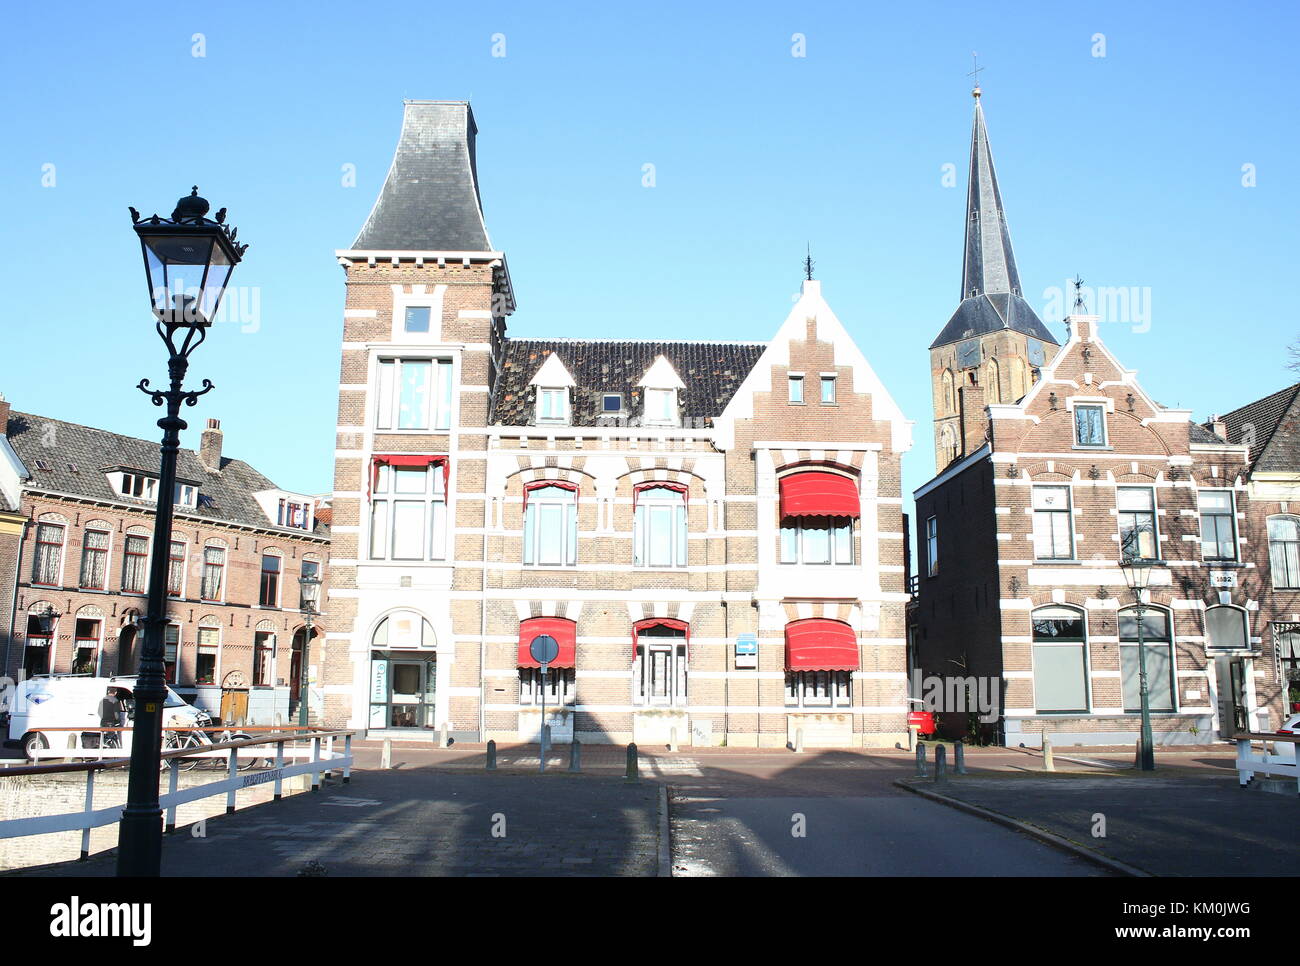 Burgwal Canal, guardando verso San medievale Nicolaaskerk (Bovenkerk) Chiesa, Kampen, Paesi Bassi Foto Stock